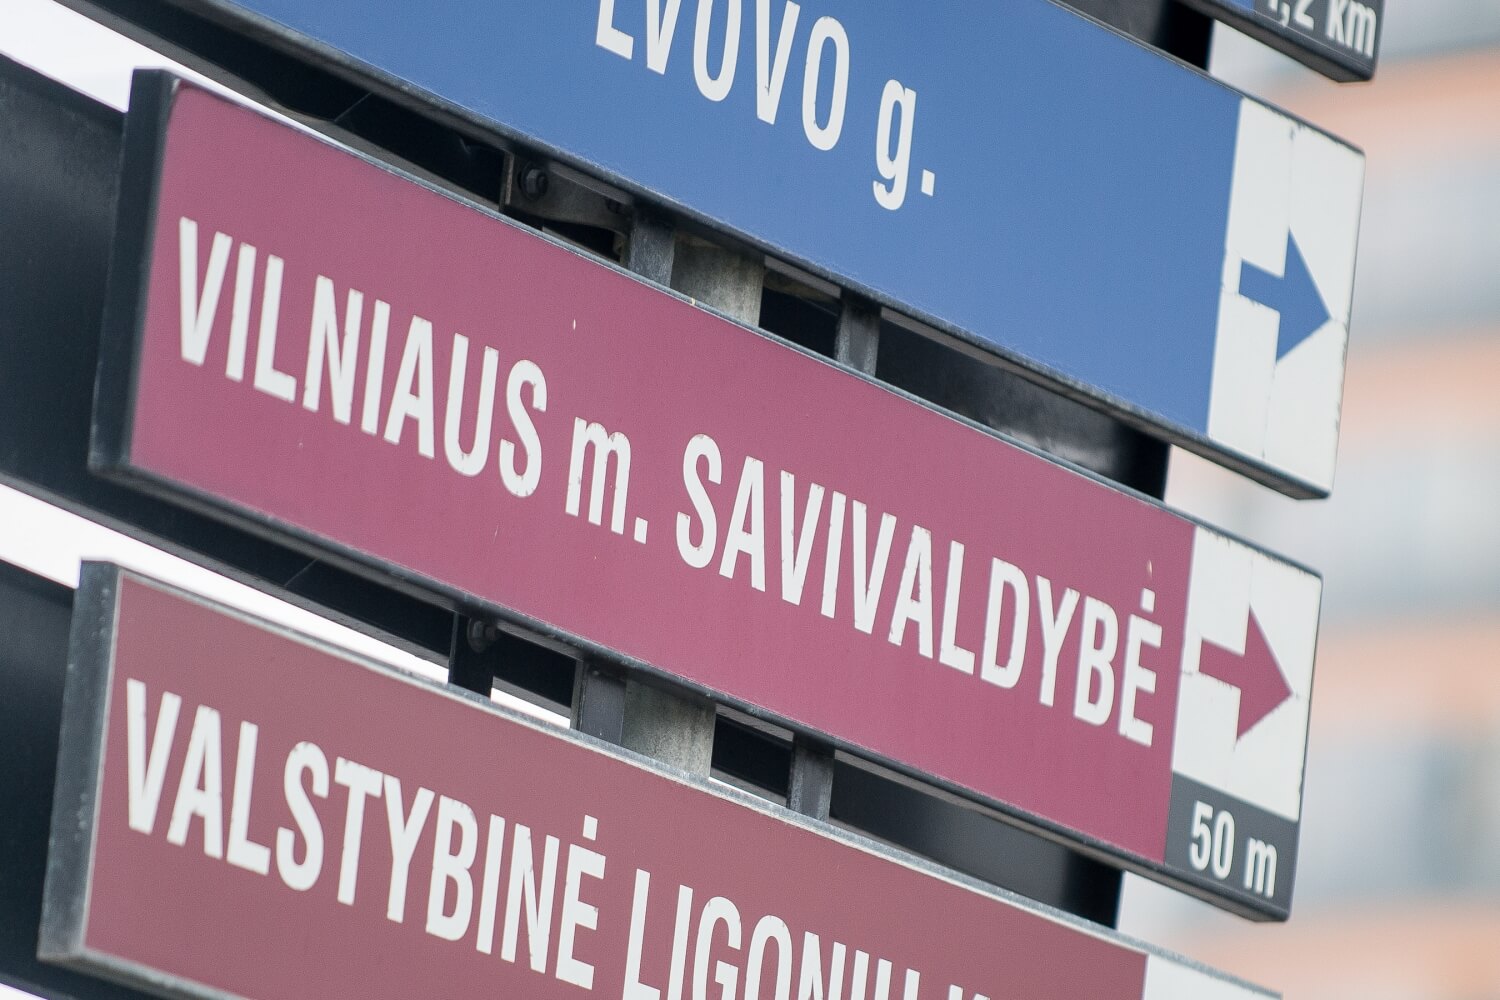 Beveik penktadalis Lietuvos savivaldybių darbuotojų yra giminės, ketvirtadienį paskelbė analizę atlikusi Specialiųjų tyrimų tarnyba